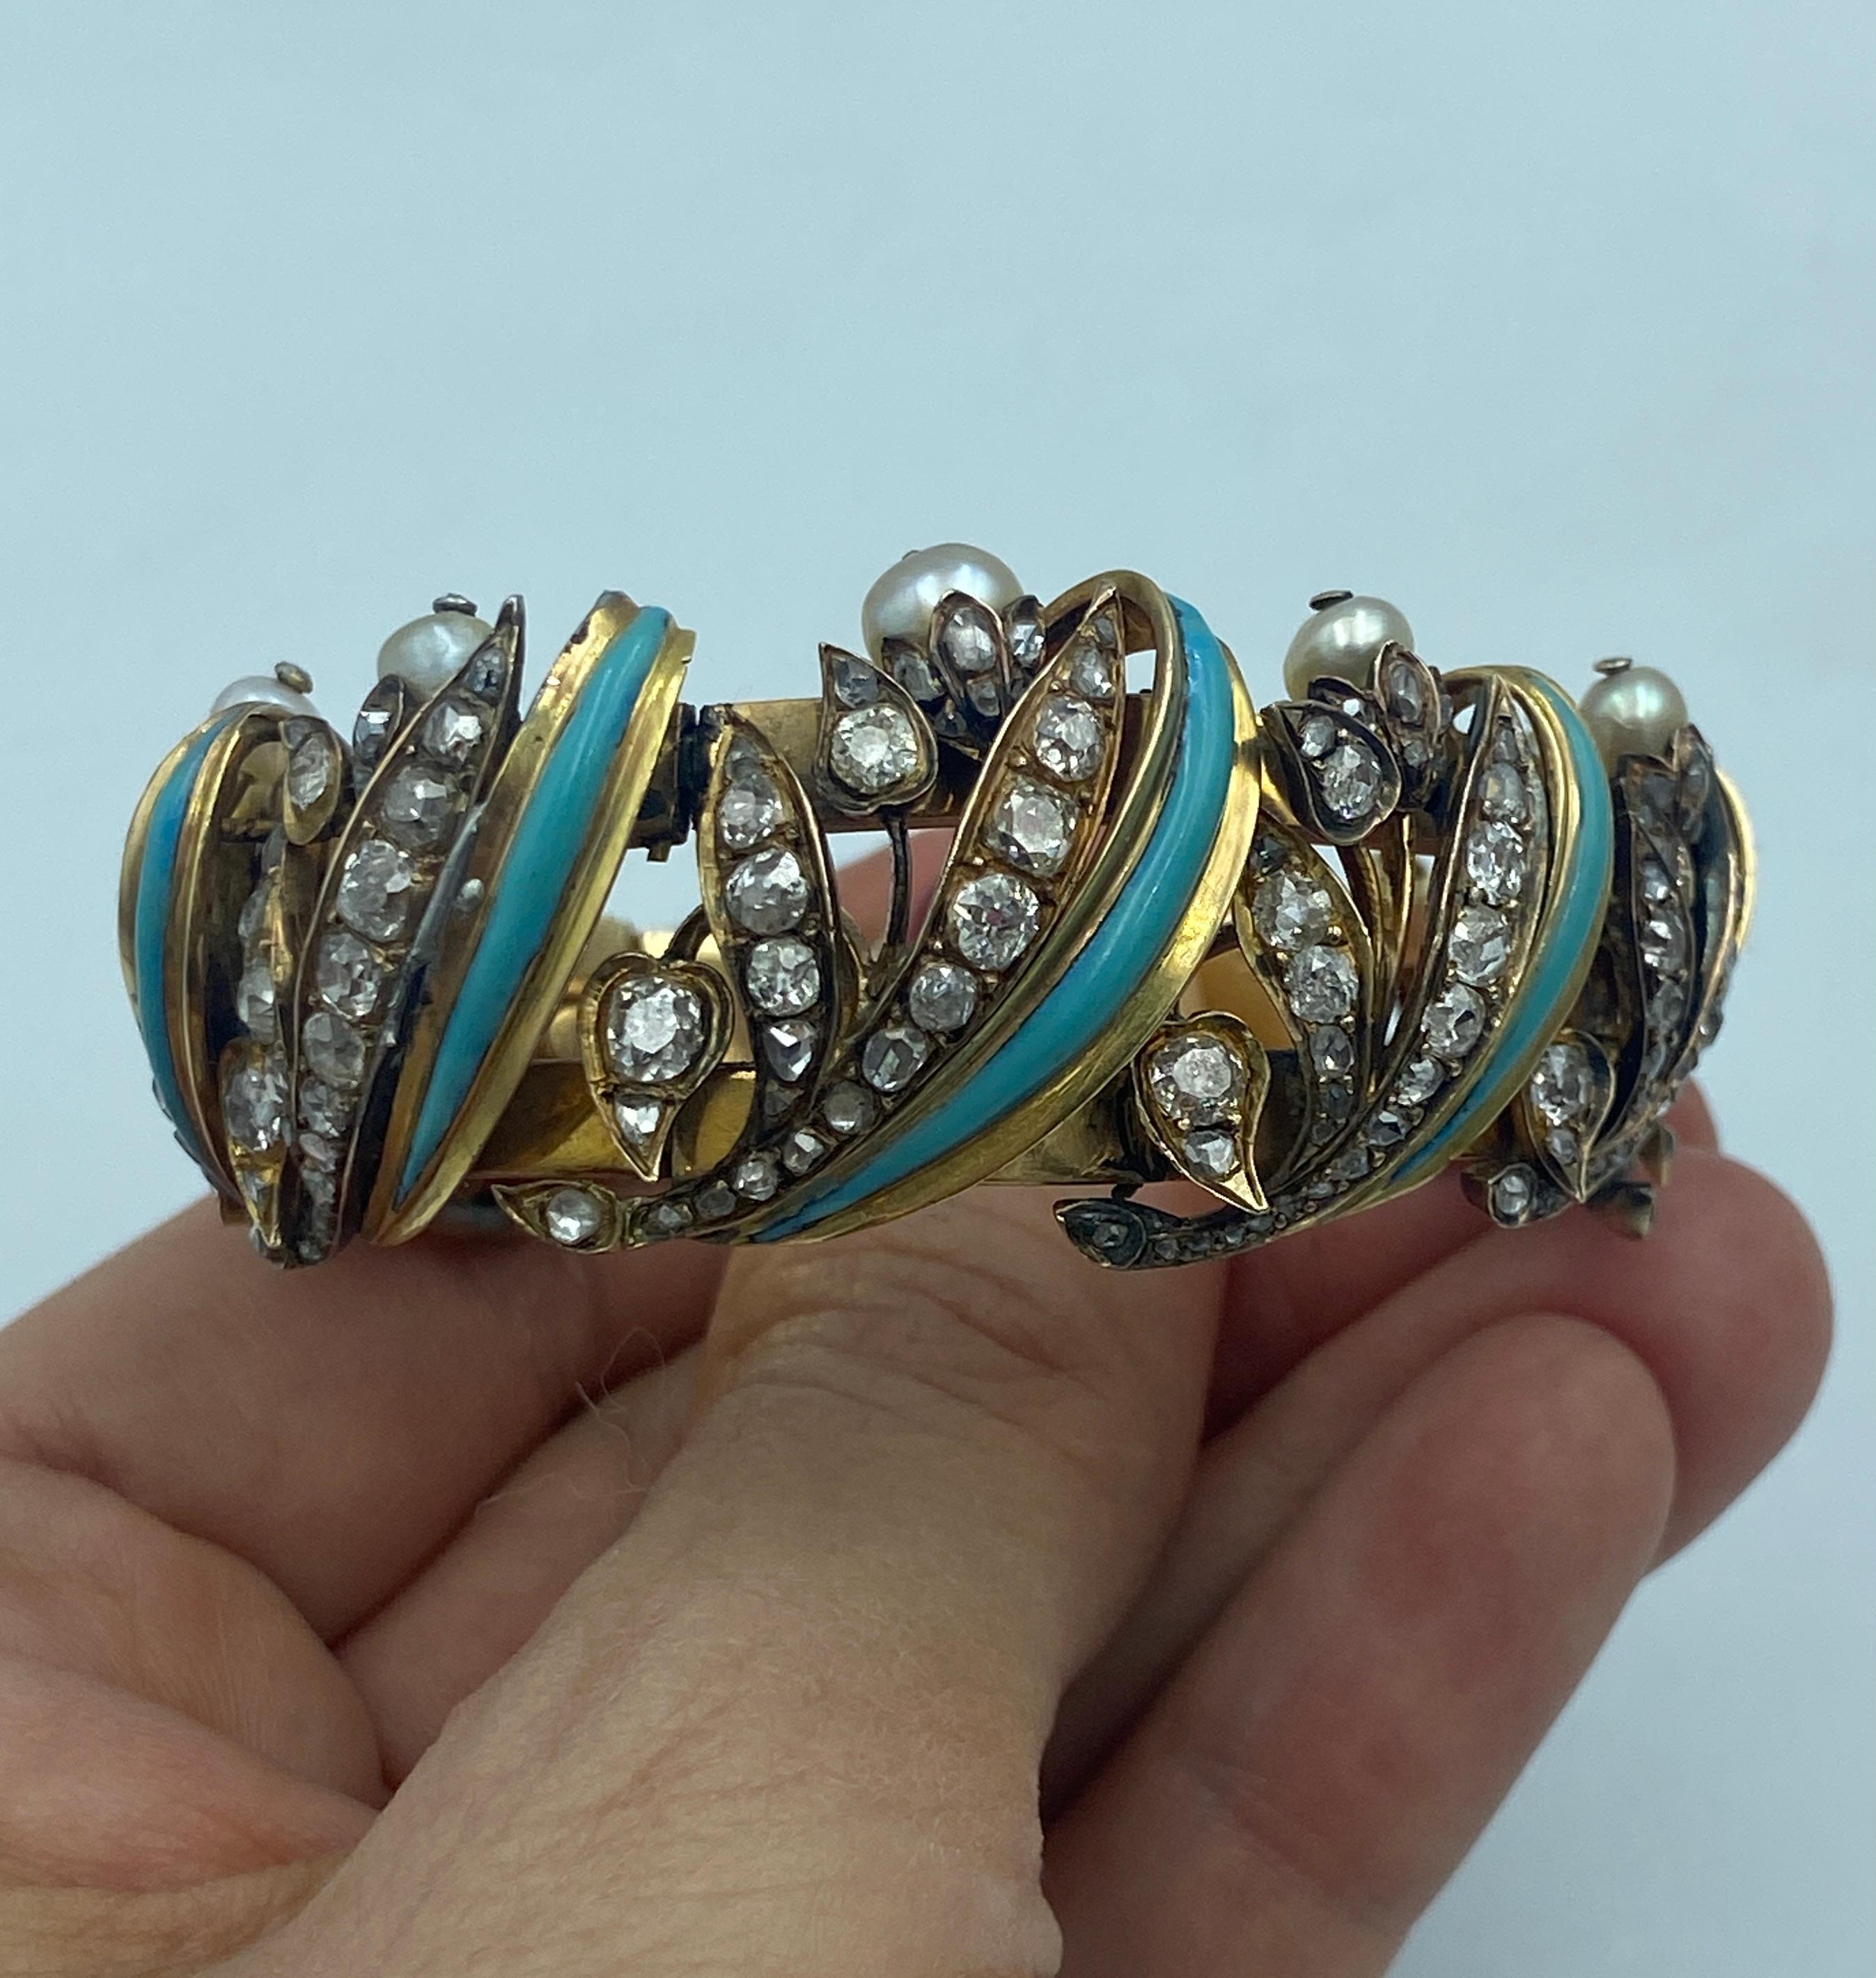 Ce bracelet européen unique datant des années 1820 est composé d'or 18k, de turquoise, de perles naturelles et d'environ 4 à 5 carats de diamants taillés dans des mines anciennes. Il s'agit d'une pièce d'une beauté remarquable et d'un véritable